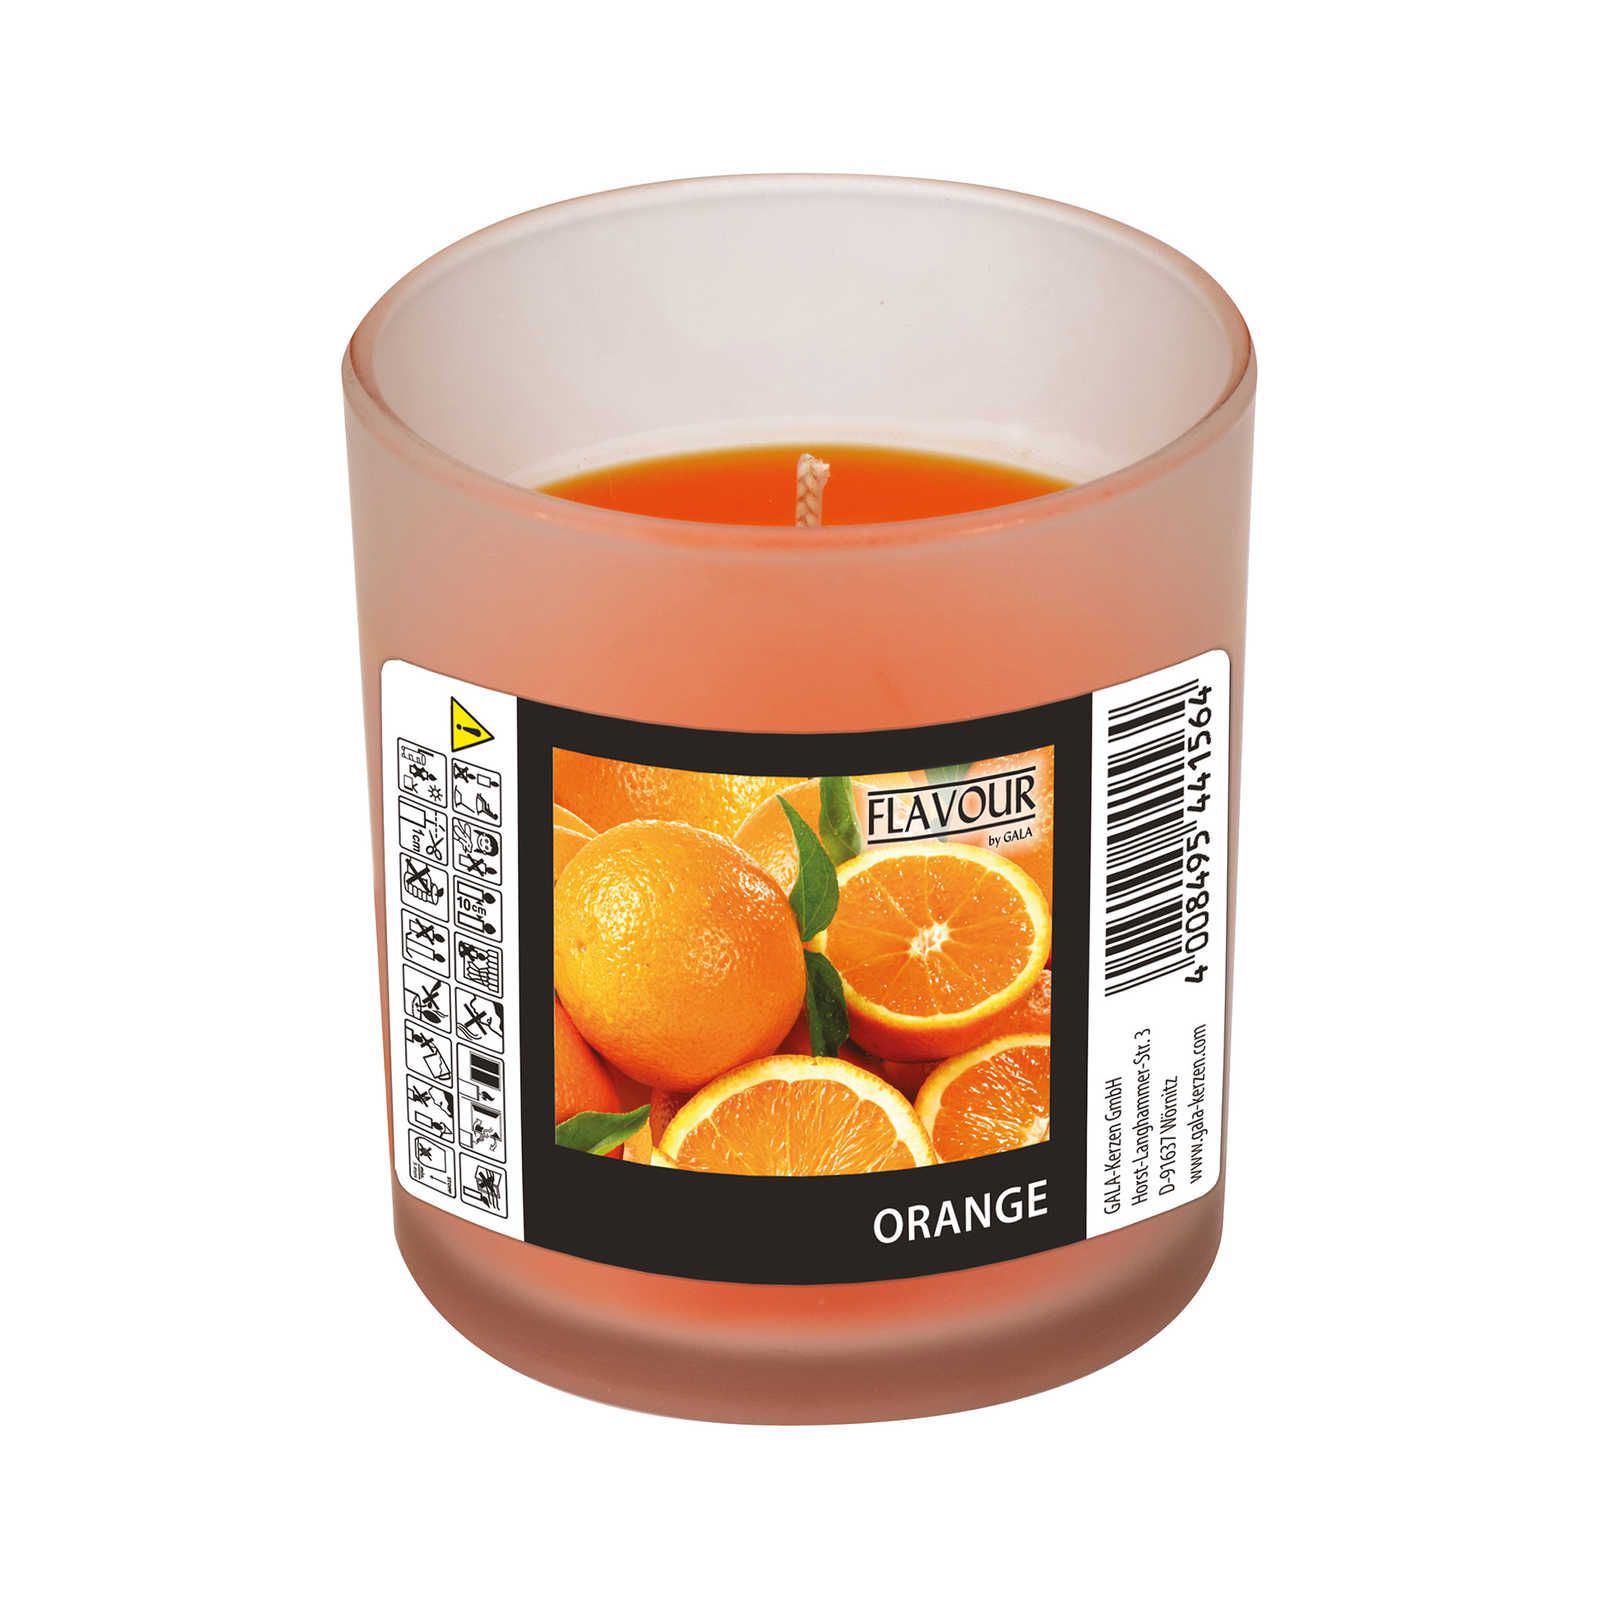             Vela perfumada de naranja con fragancia que levanta el ánimo - 110g
        